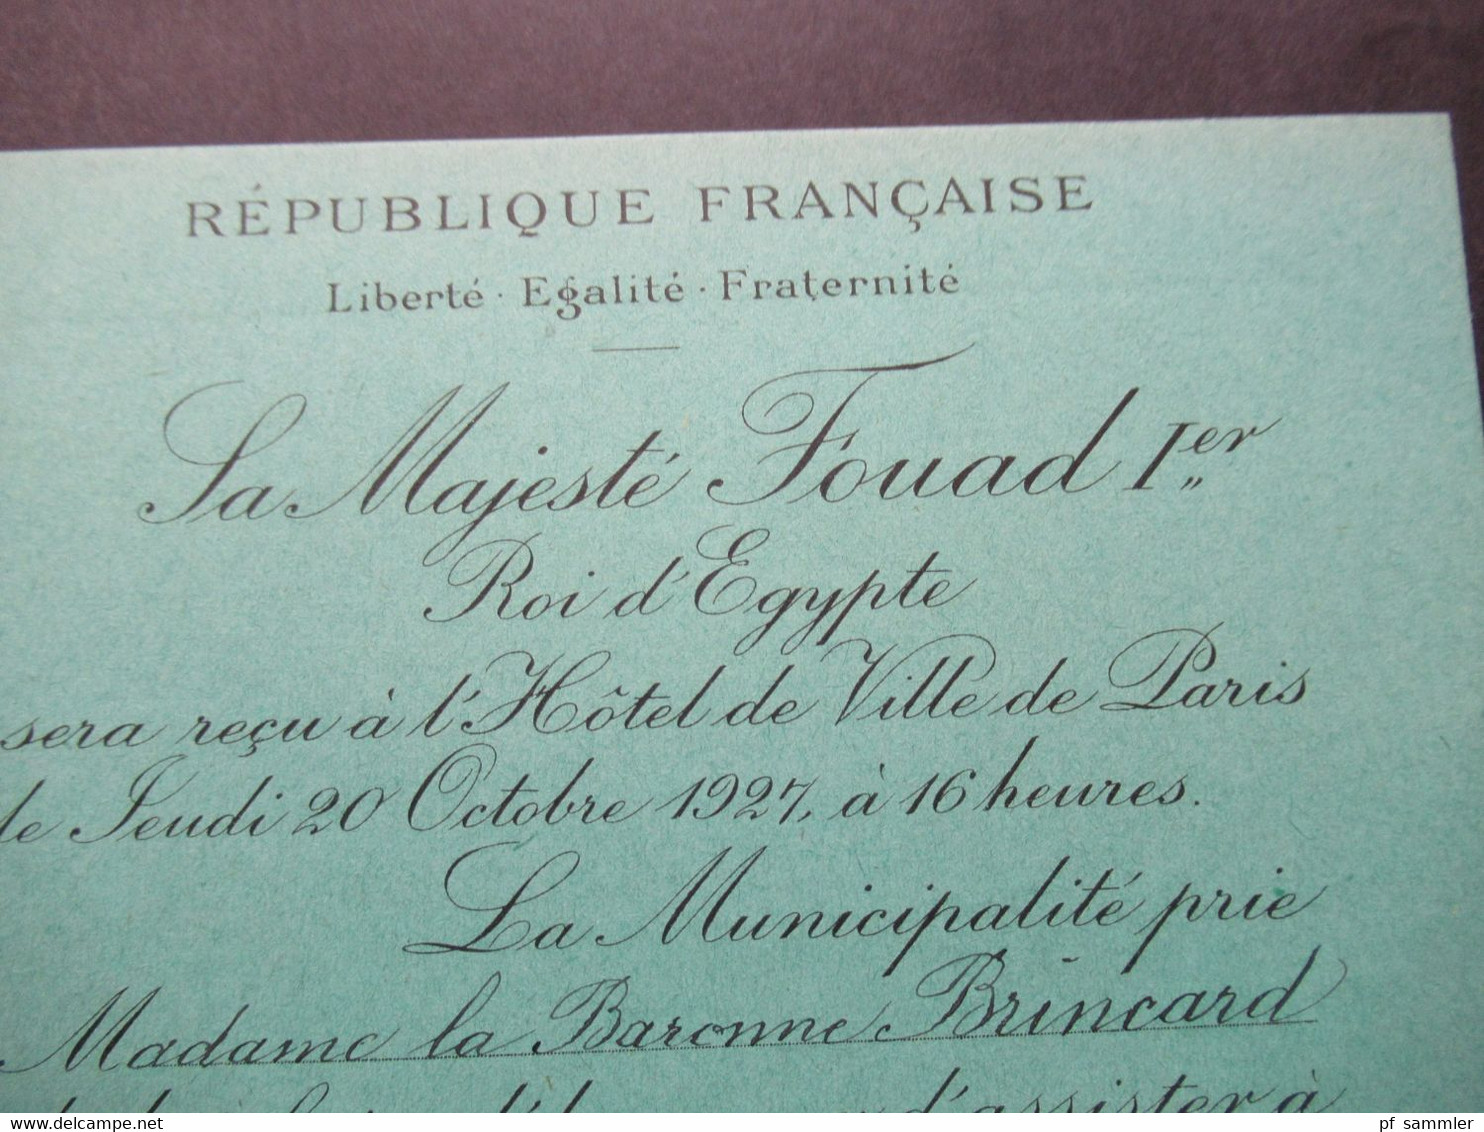 1927 Zwei Einladungskarten zum Besuch Sa Majestre Fouad 1. Roi d'Egypte in Paris im Hotel de Ville Salon des Arcades